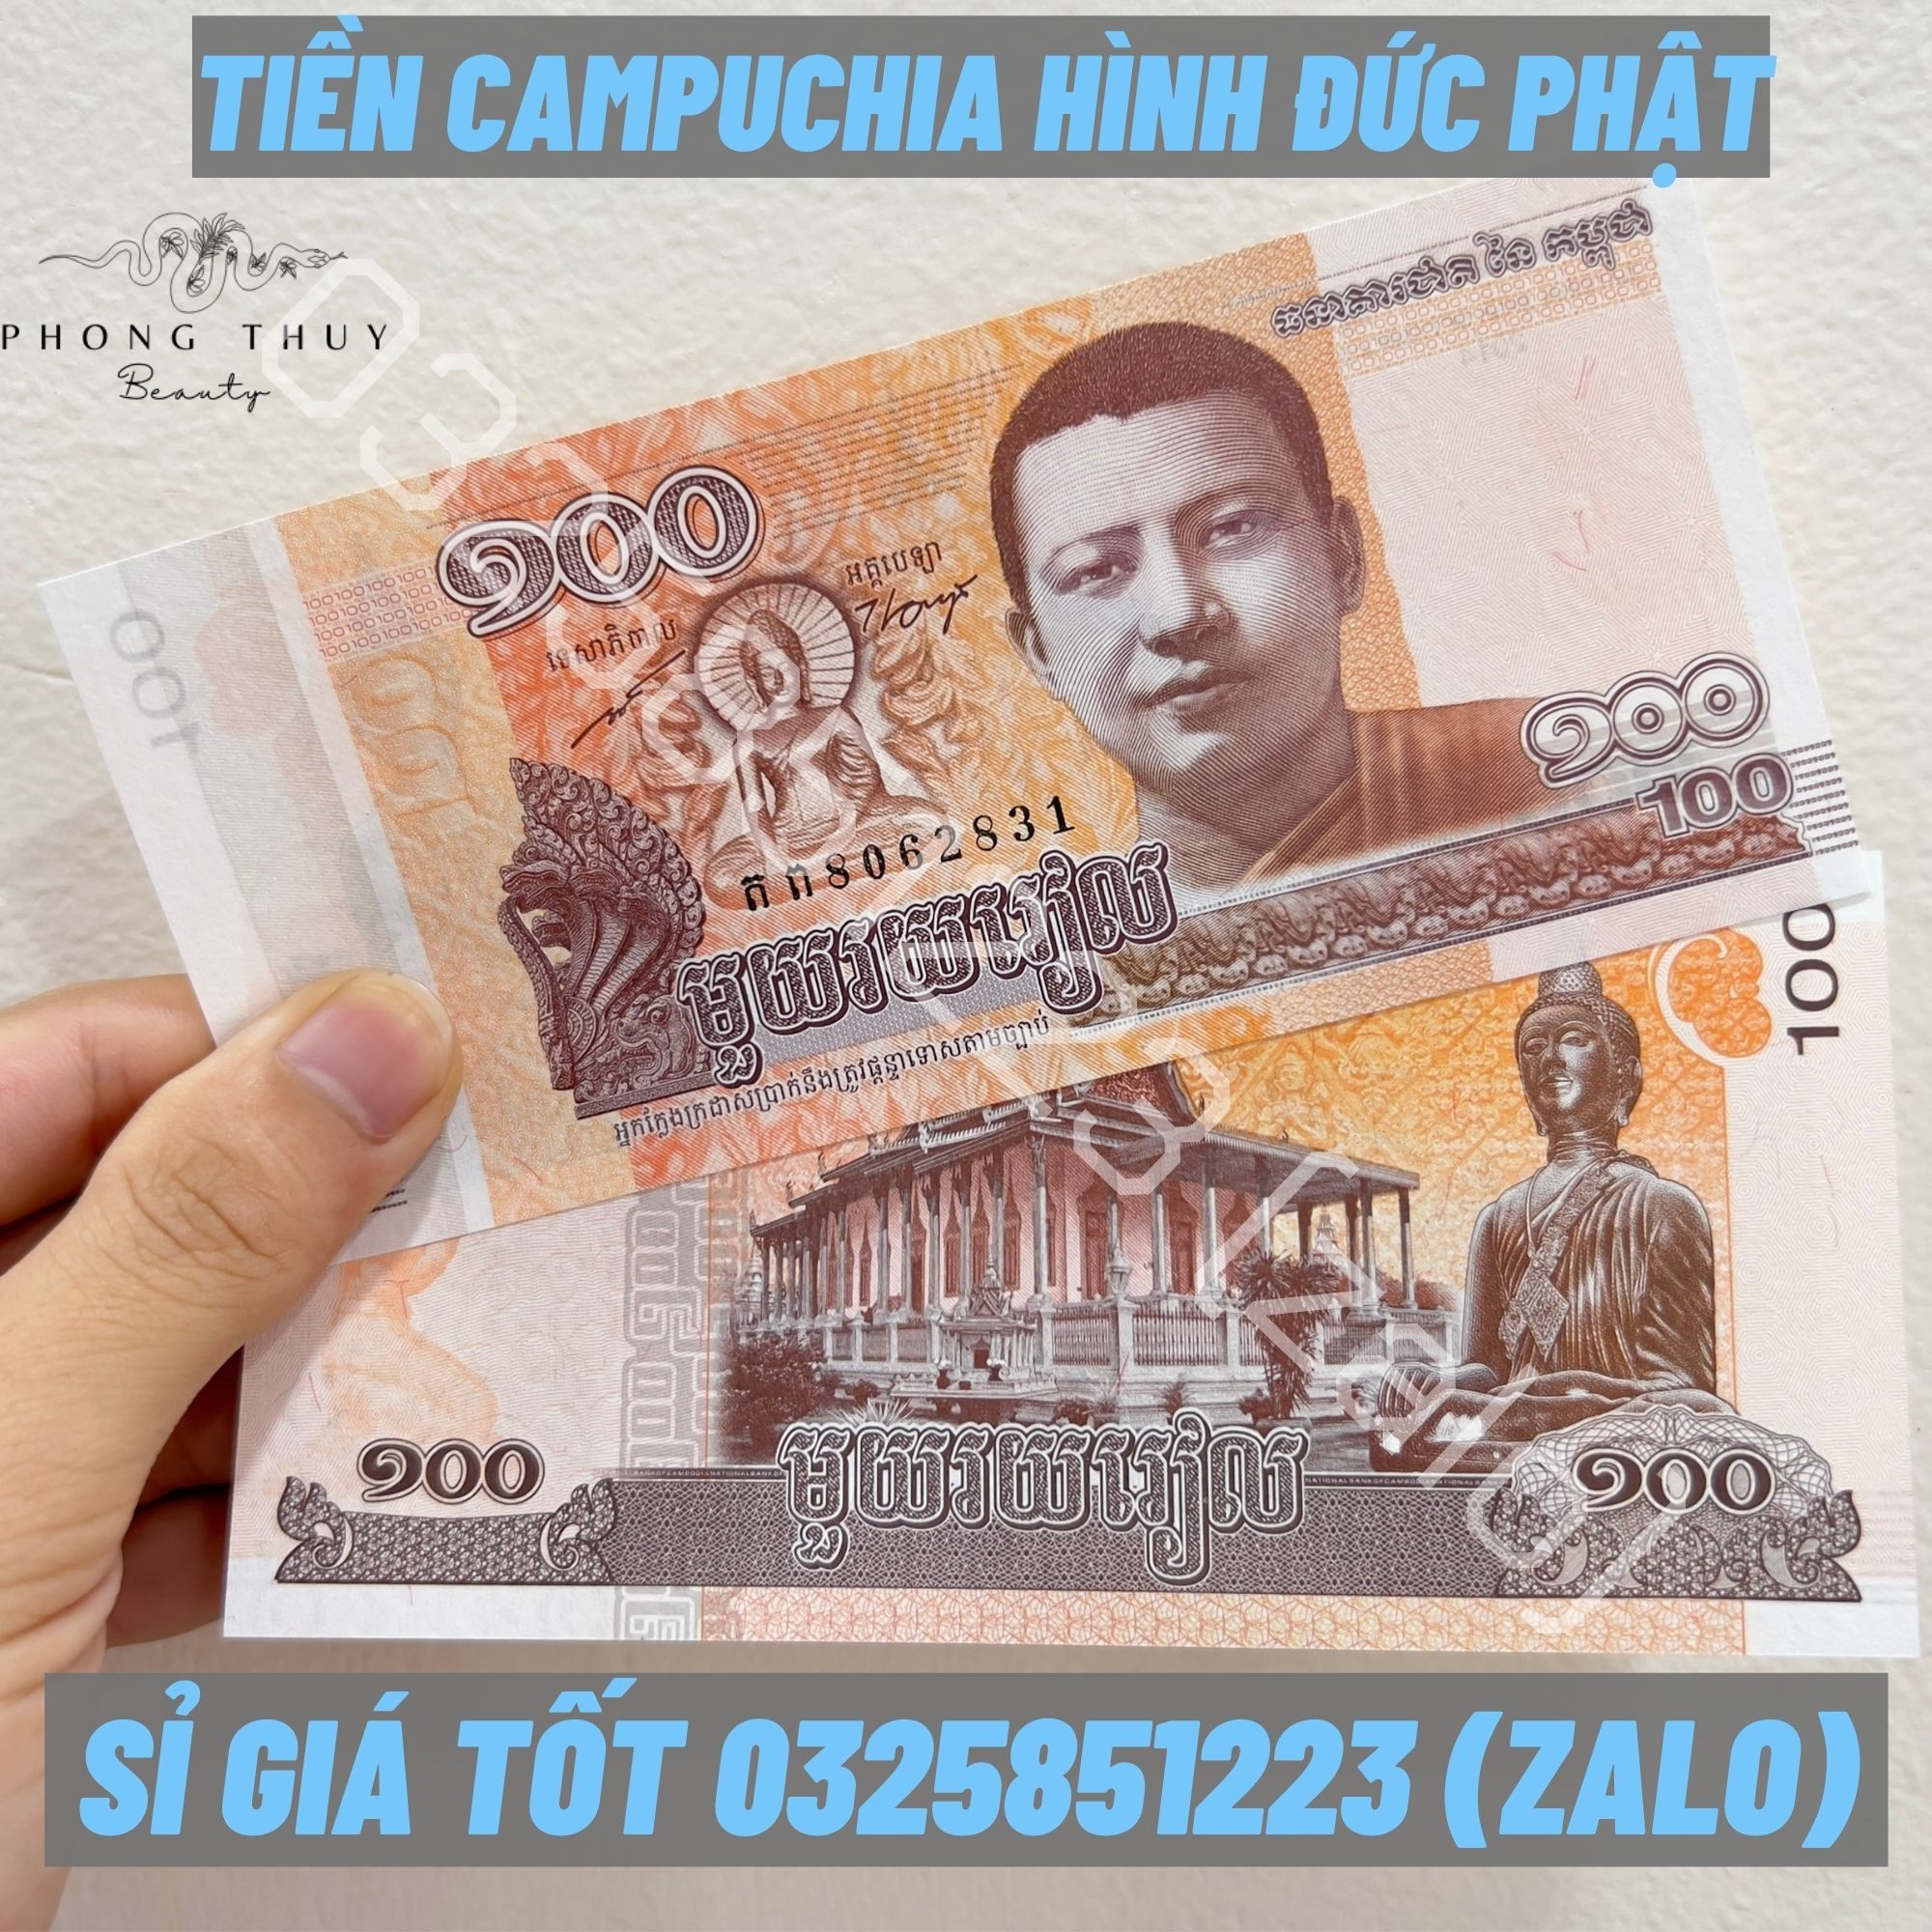 Đổi tiền Campuchia ở đâu Tỷ giá đổi tiền Campuchia bao nhiêu